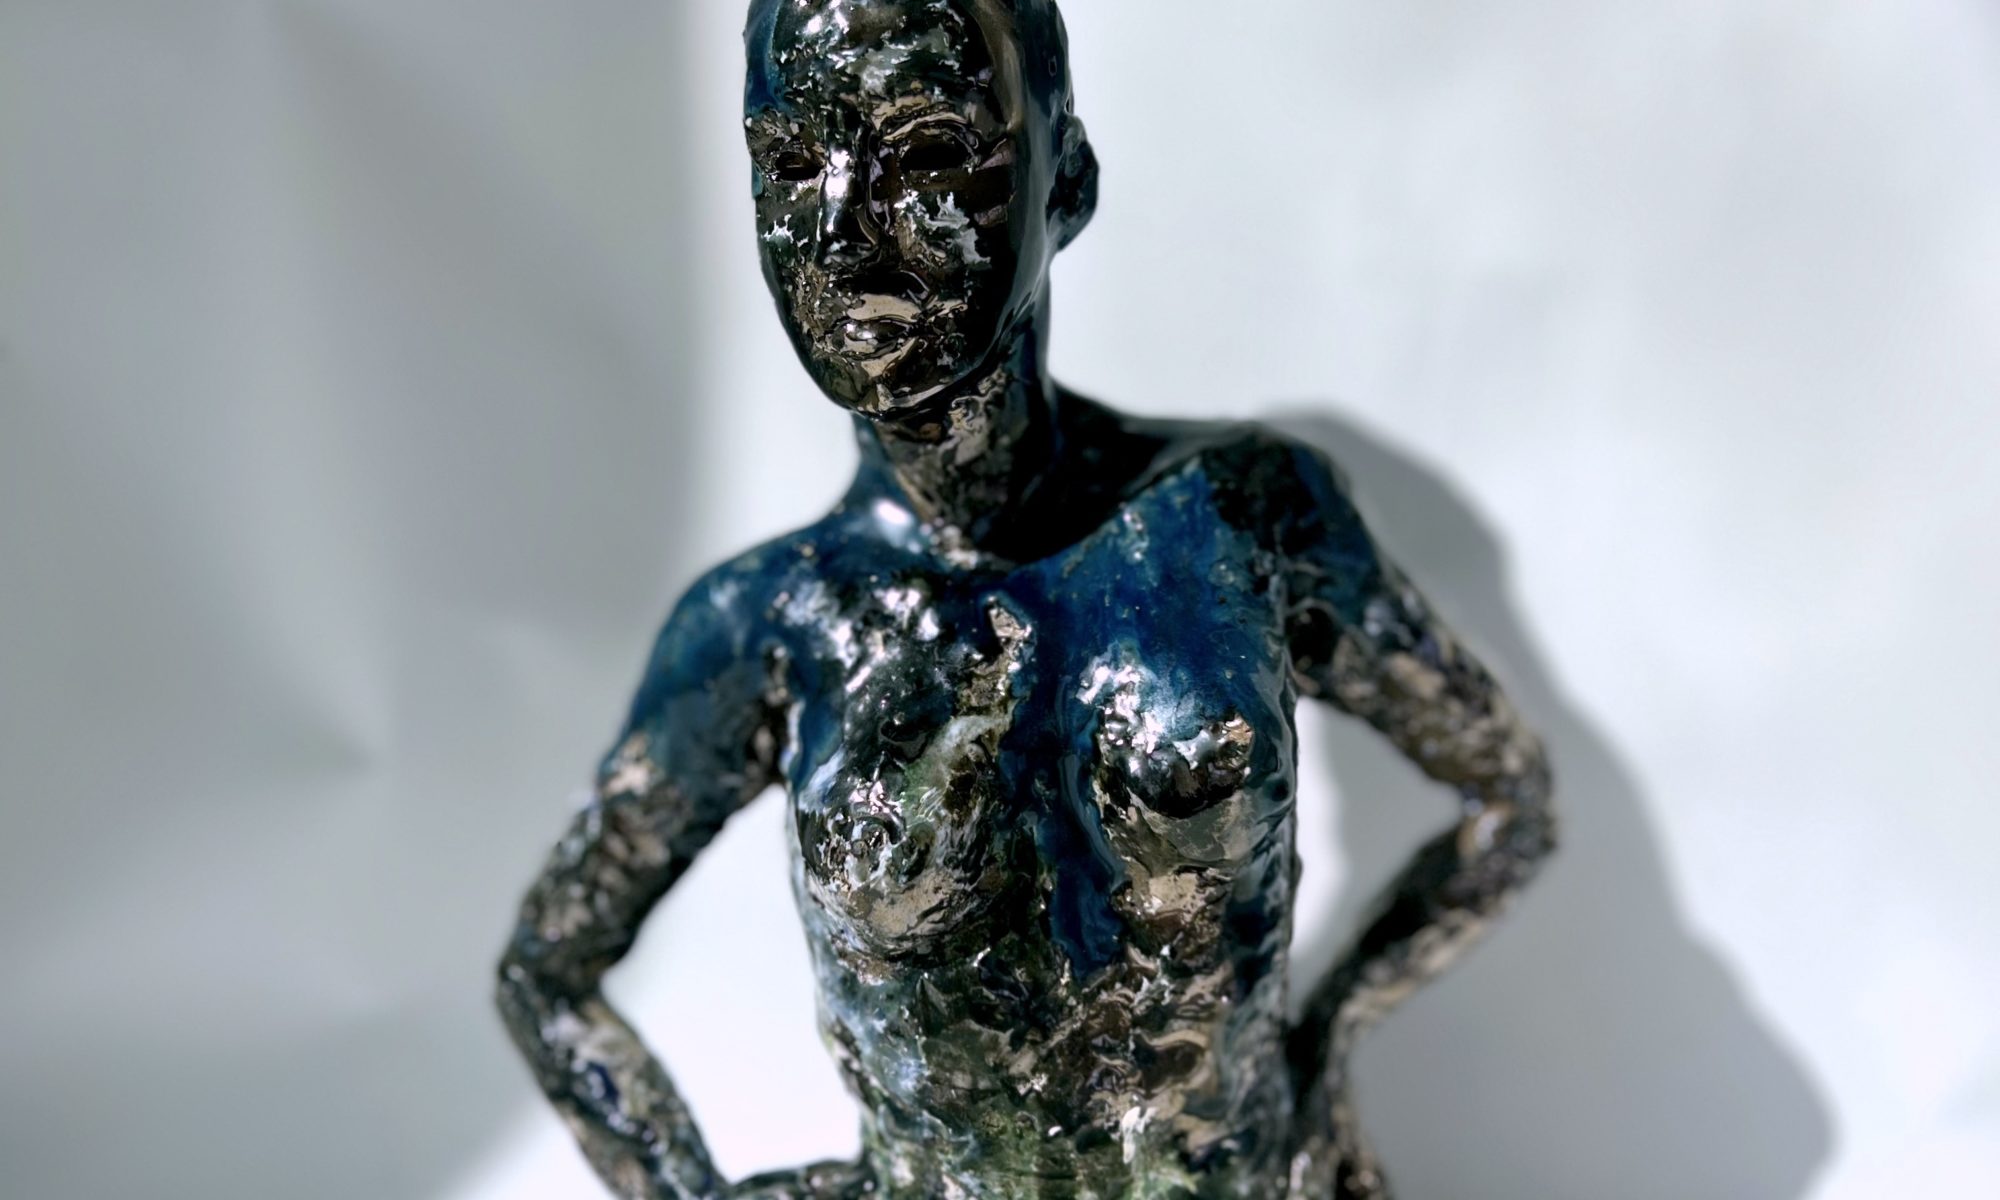 Claire Michelini artiste sculpteur sculptrice céramiste lyon france